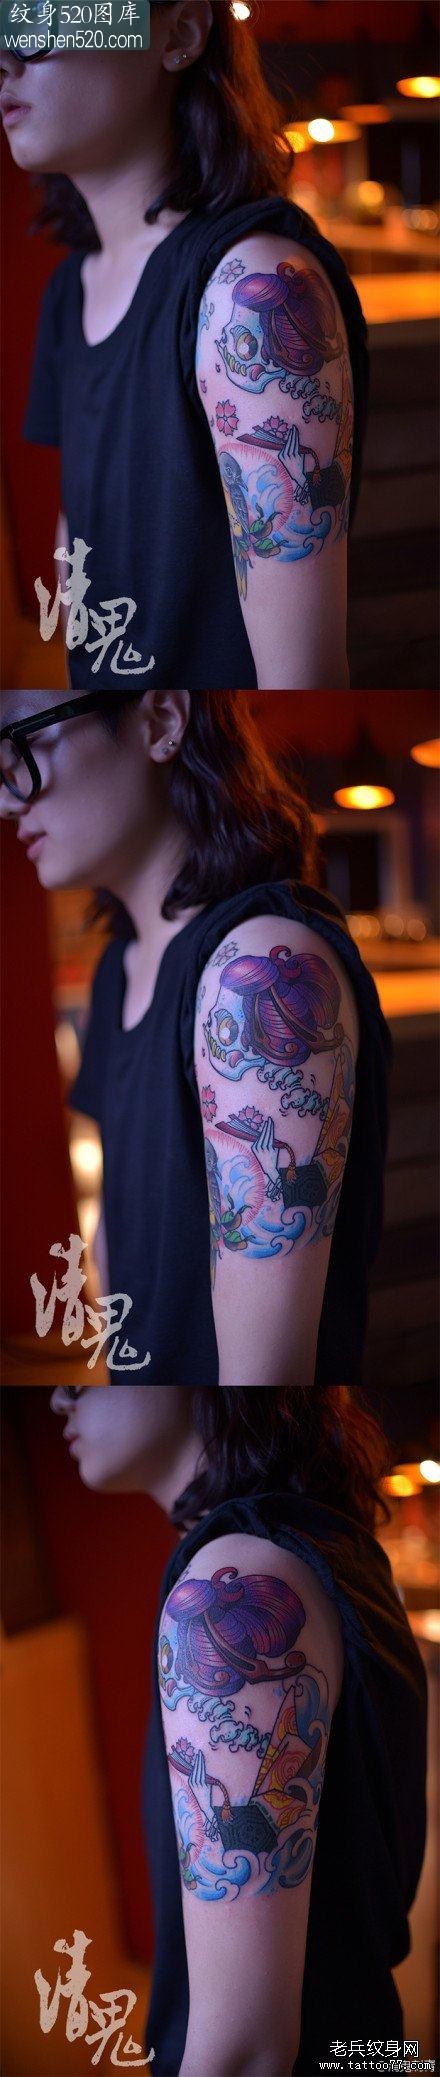 女孩子手臂一张潮流经典的彩色骷髅纹身图案